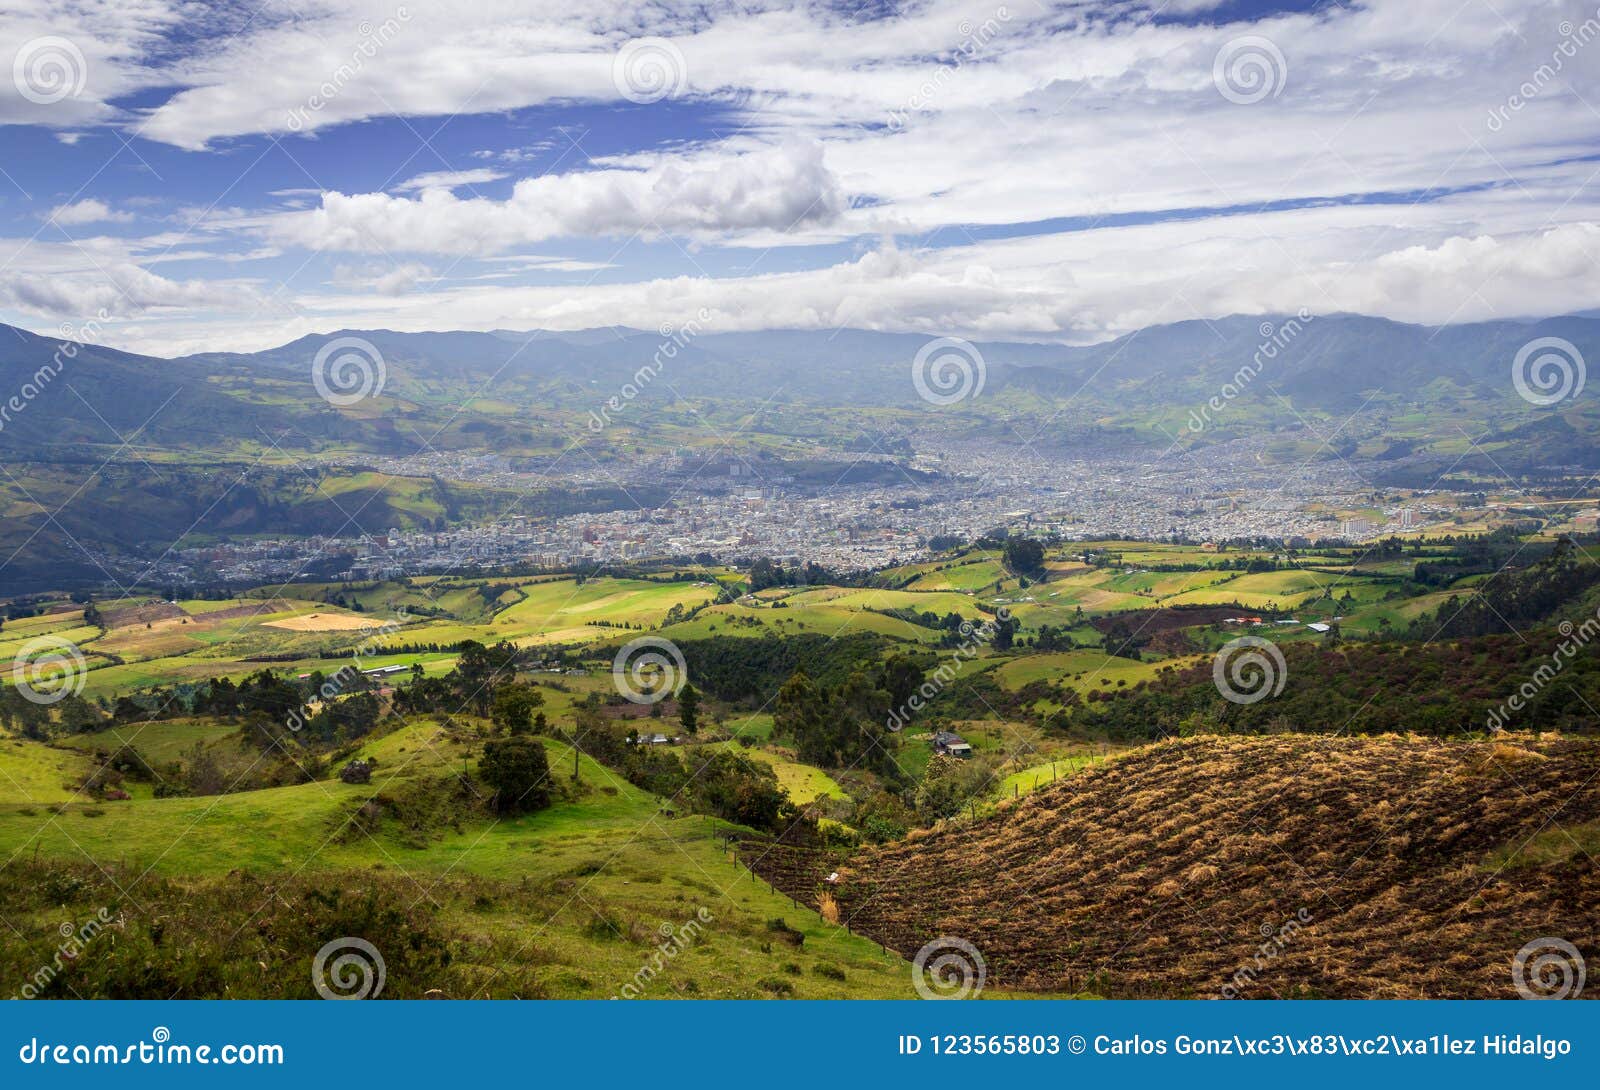 a gaze to the south. san juan de pasto - colombia